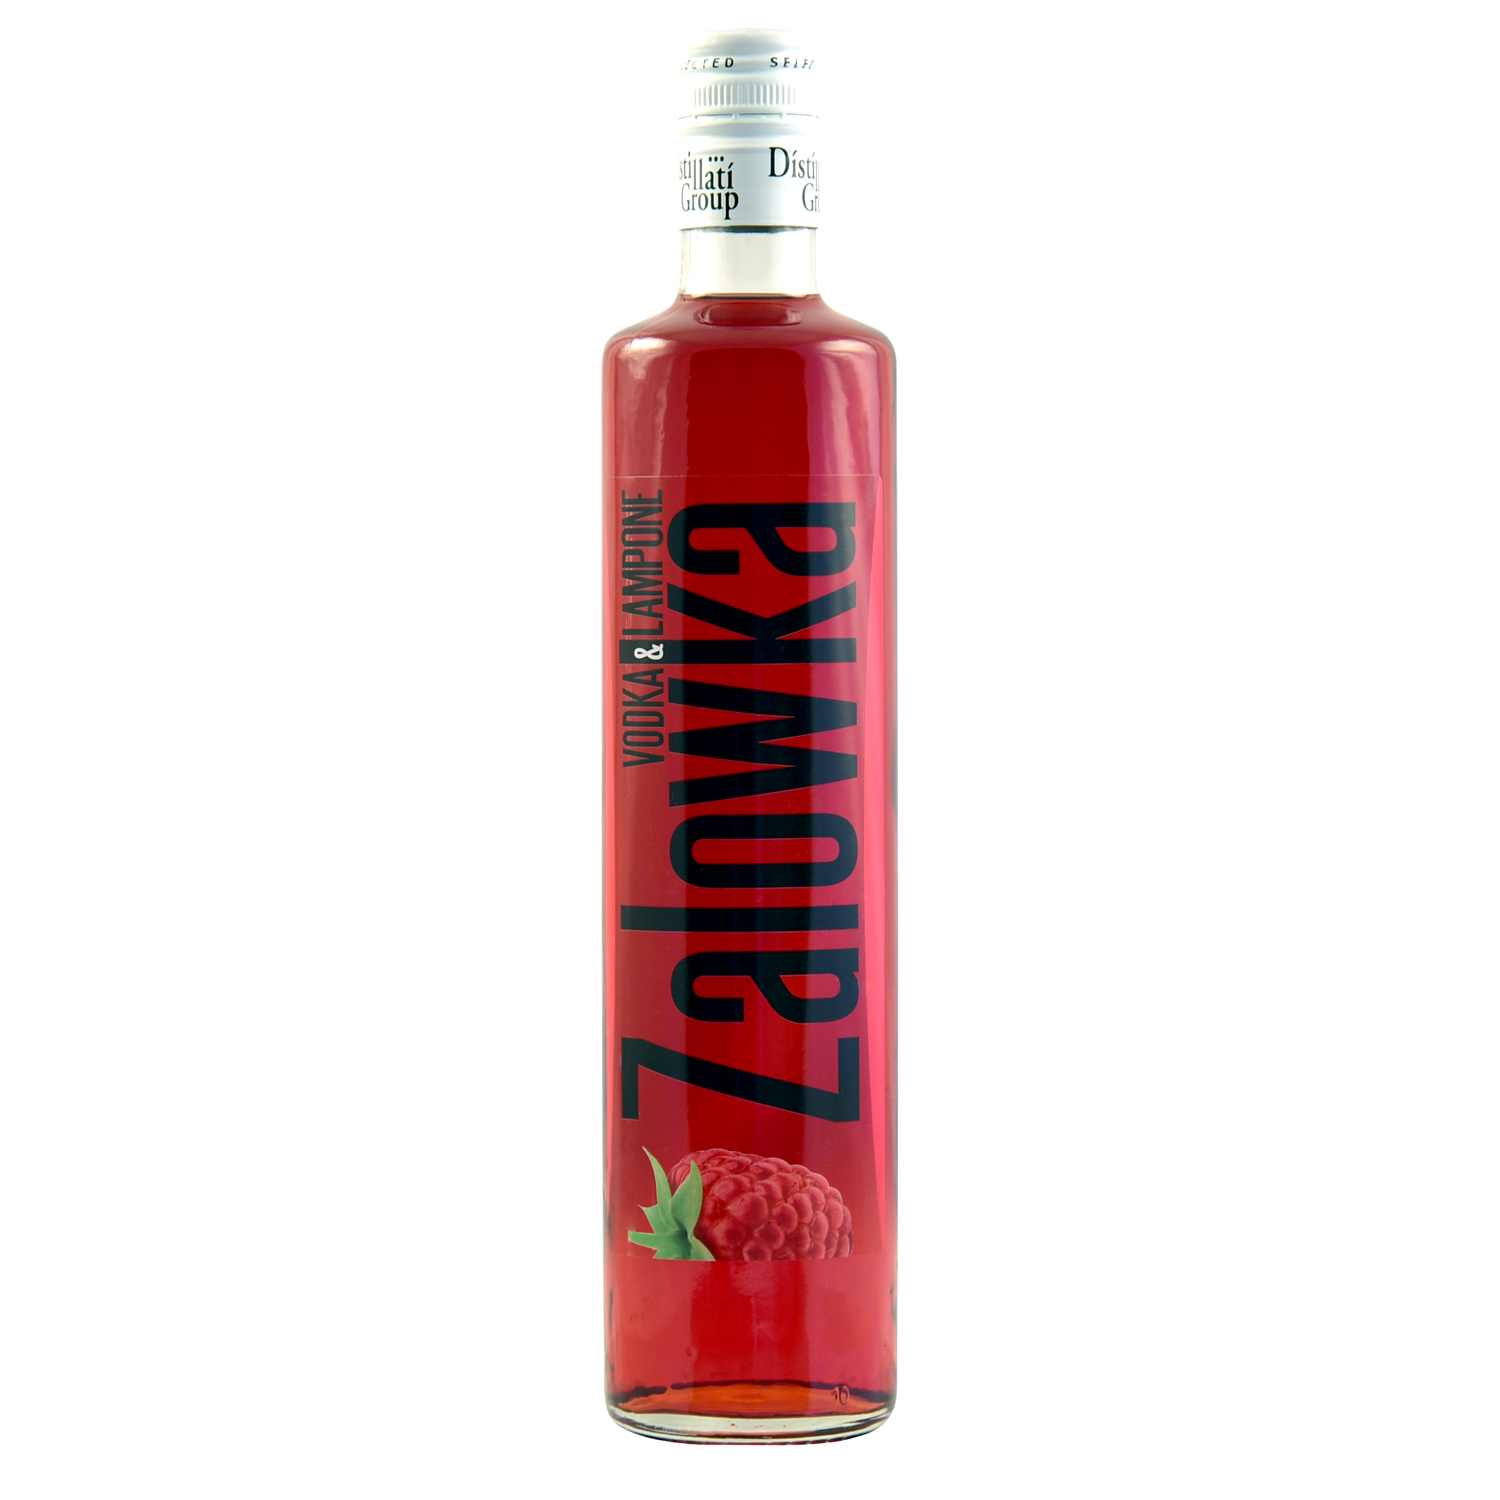 ZALOWKA Vodka & Himbeer, 21% Vol. 0,7 ltr. Lampone Likör mit Wodka